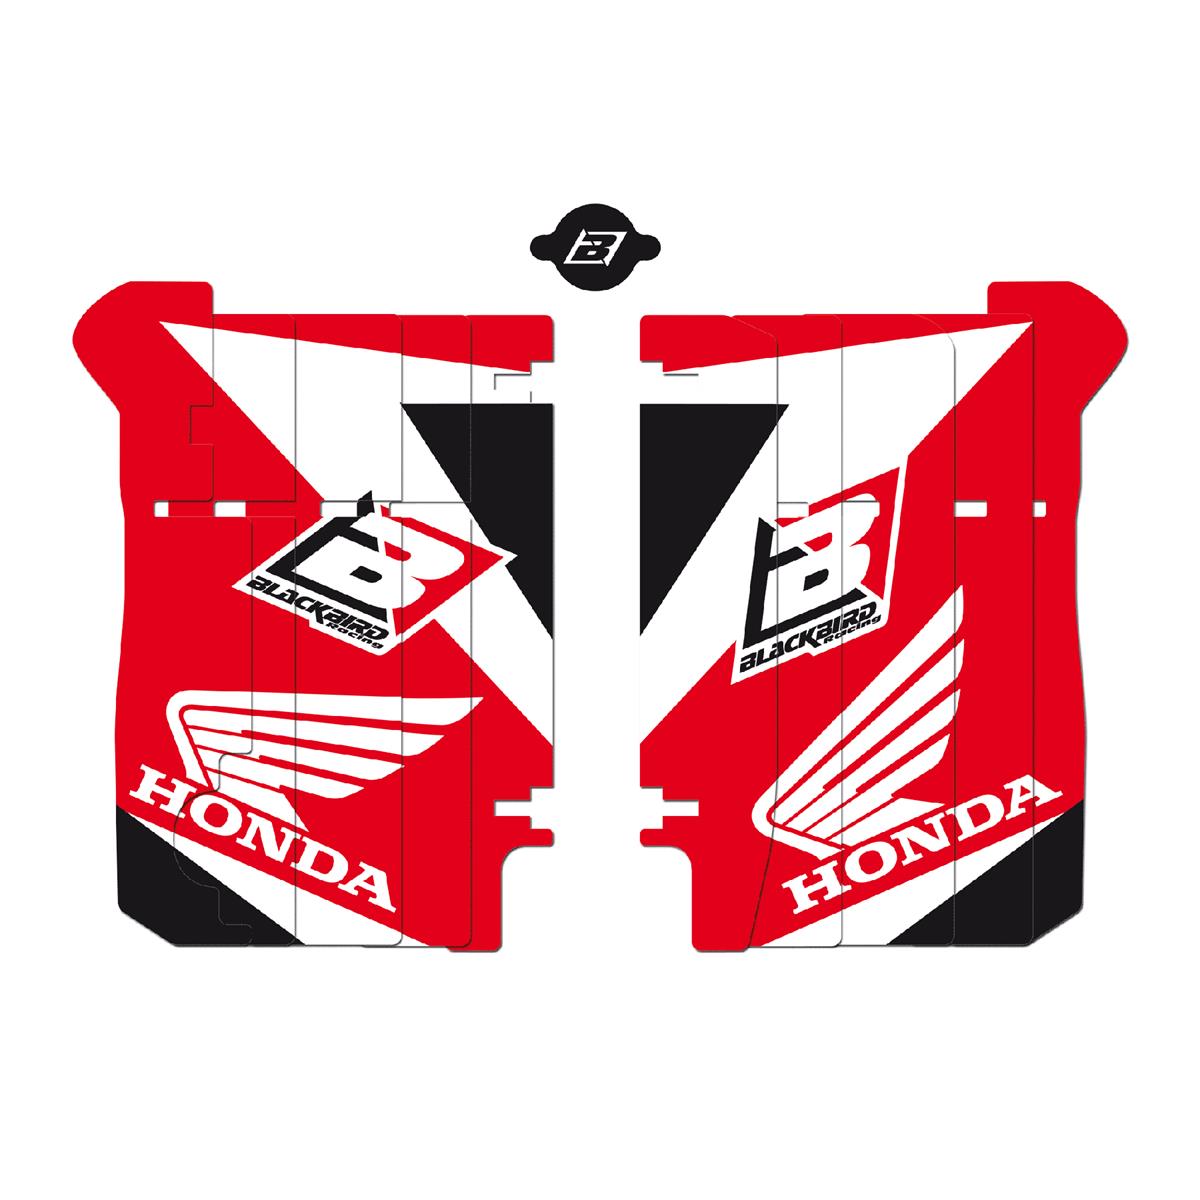 Blackbird Racing Autocollants pour Grille de Radiateur Dream 3 Honda CR-F 250 14-15, Rouge/Blanc/Noir